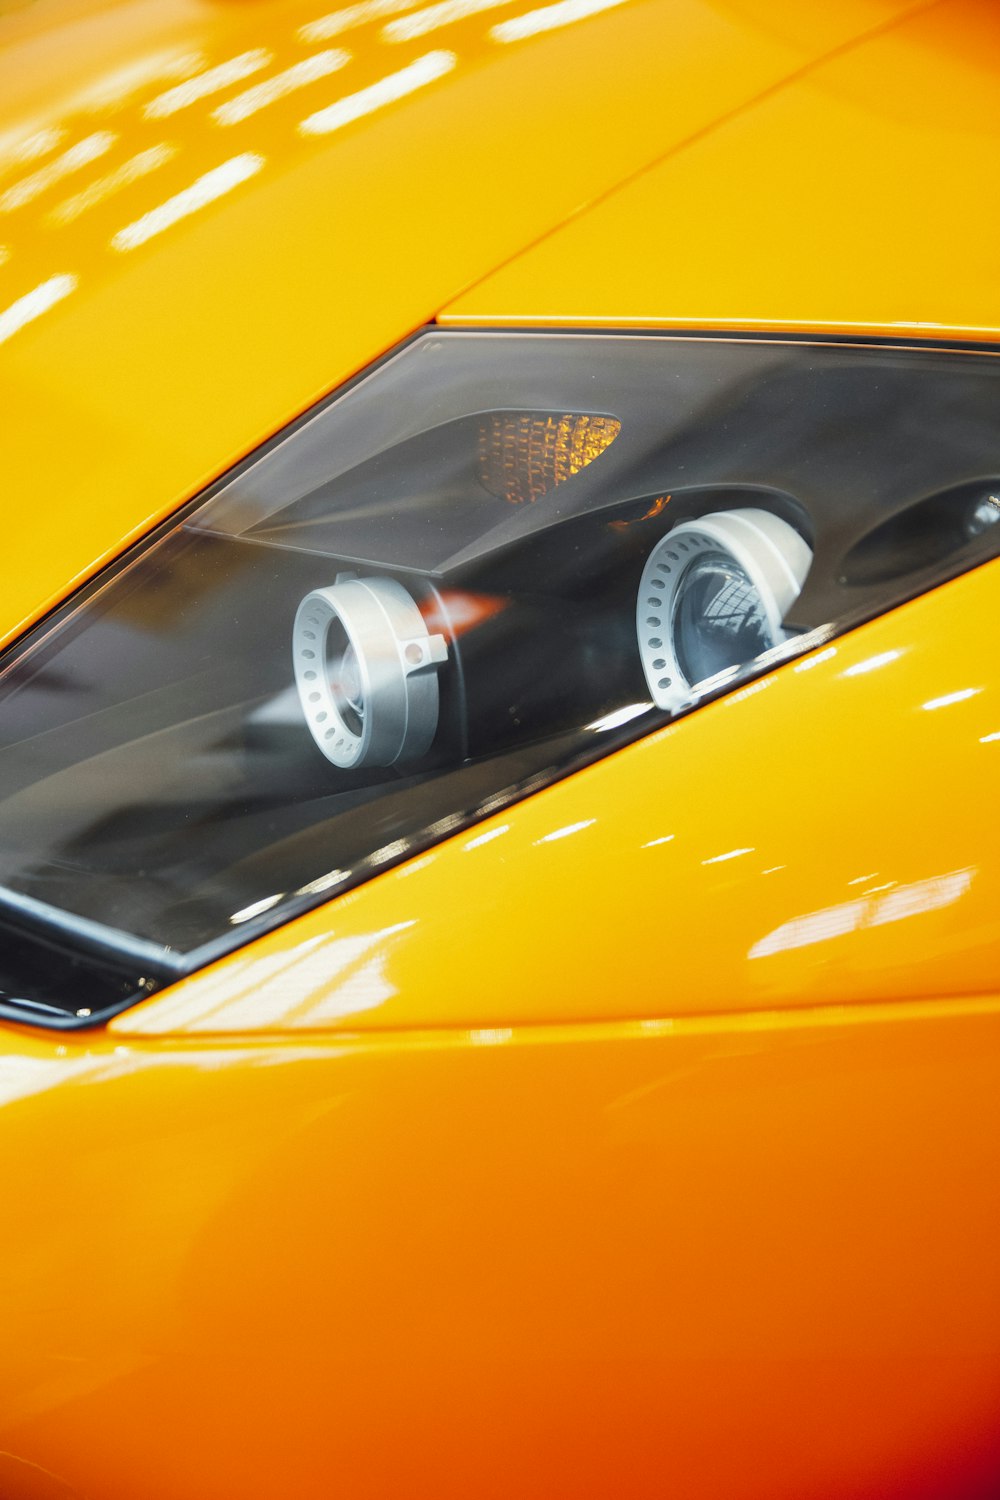 プロジェクターヘッドライト付きオレンジ色のスポーツカー